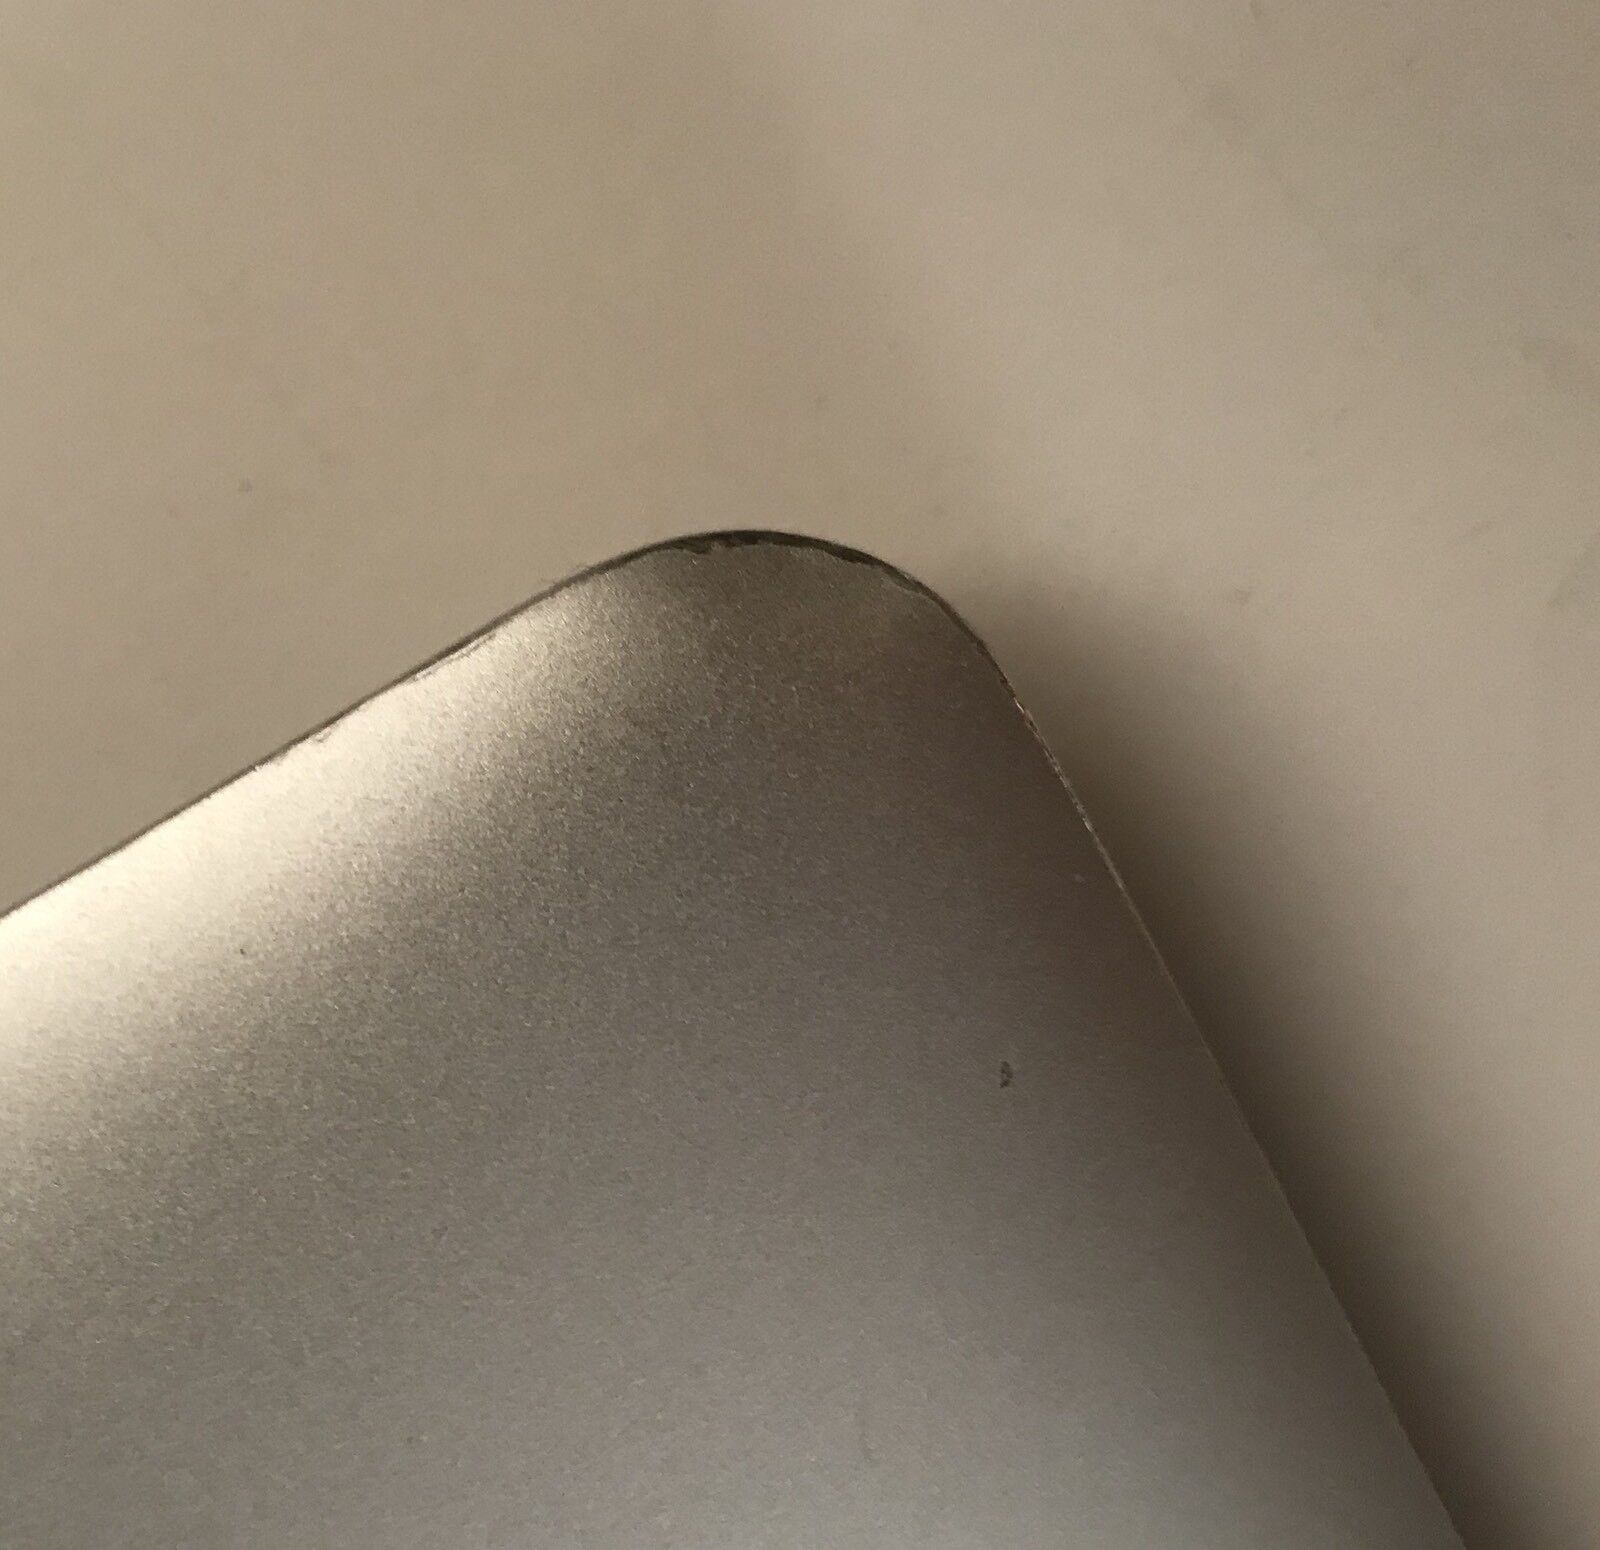 OEM !!   Apple MacBook Air 13   2013 2014 2015 2017 LCD Display - Warranty